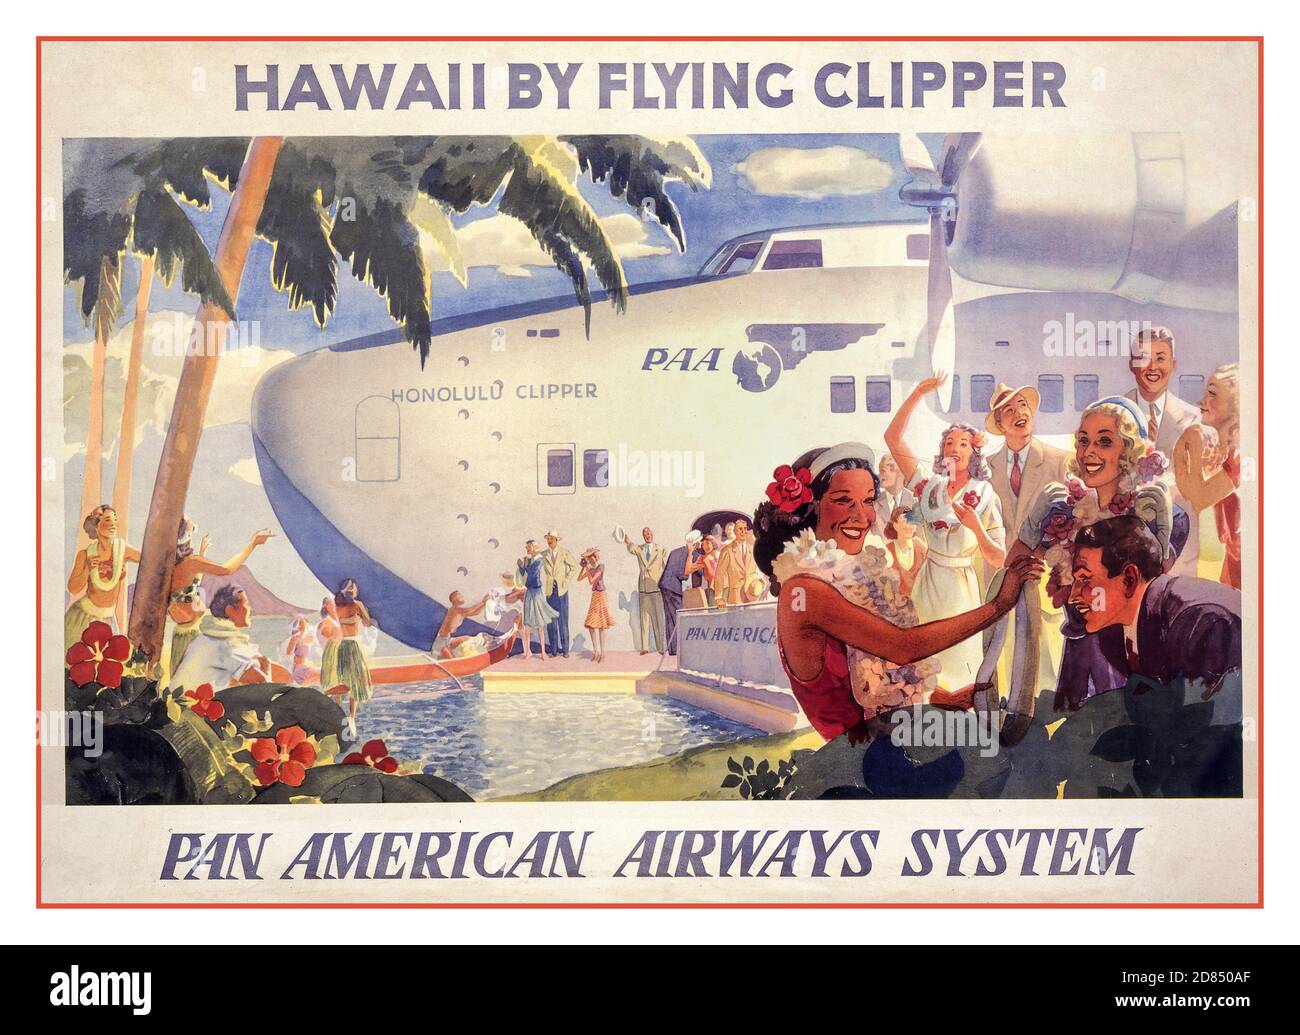 Vintage années 1930 Voyage d'aviation poster Hawaï par avion clipper--Pan American Airways System [ca. 1938] lithographie, couleur. Les Hawaiiens saluent les passagers qui débarquent de l'hydravion. Banque D'Images